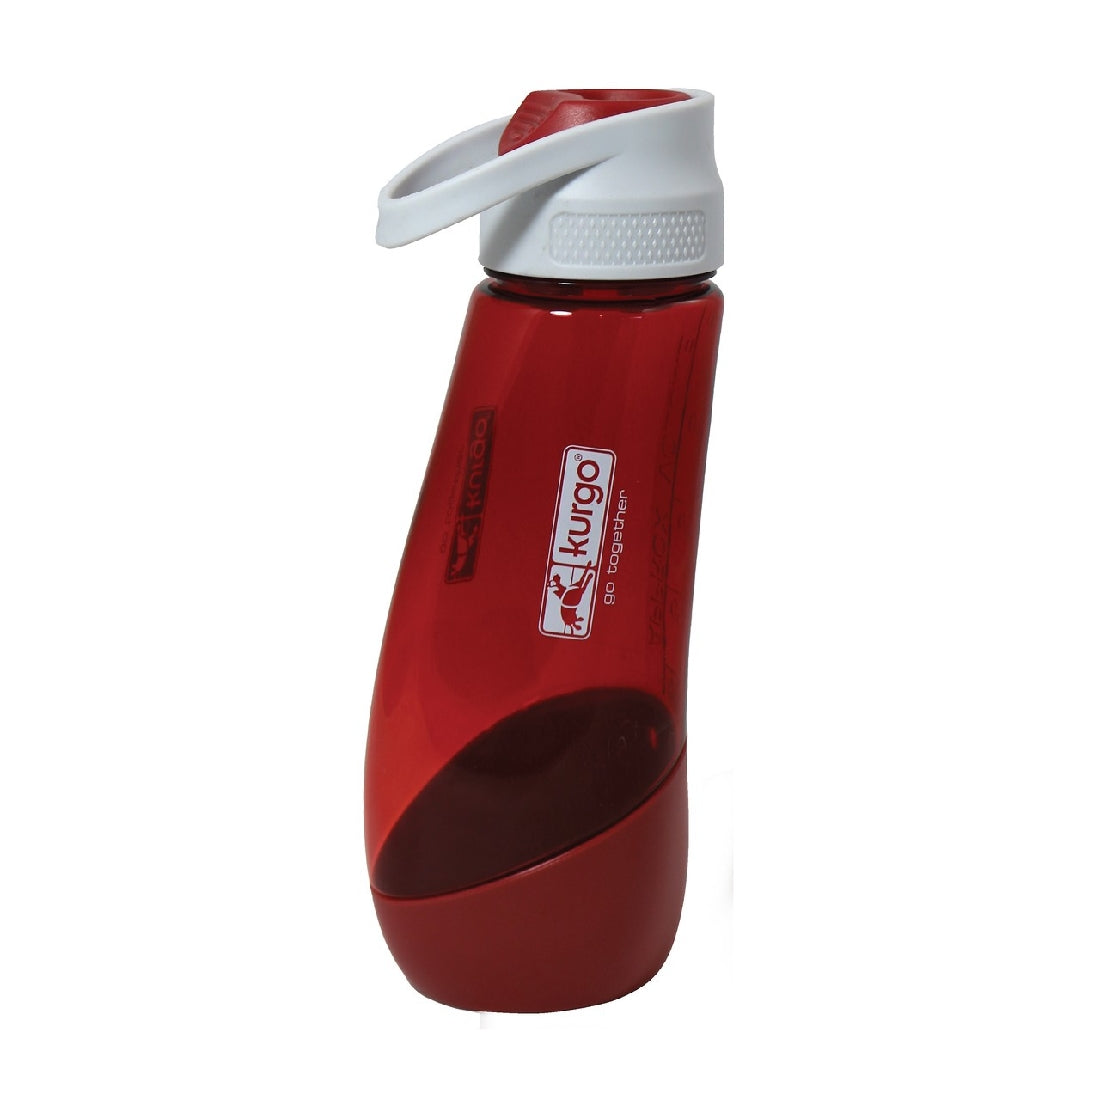 Red water bottle with a white cap, Contigo brand logo visible.